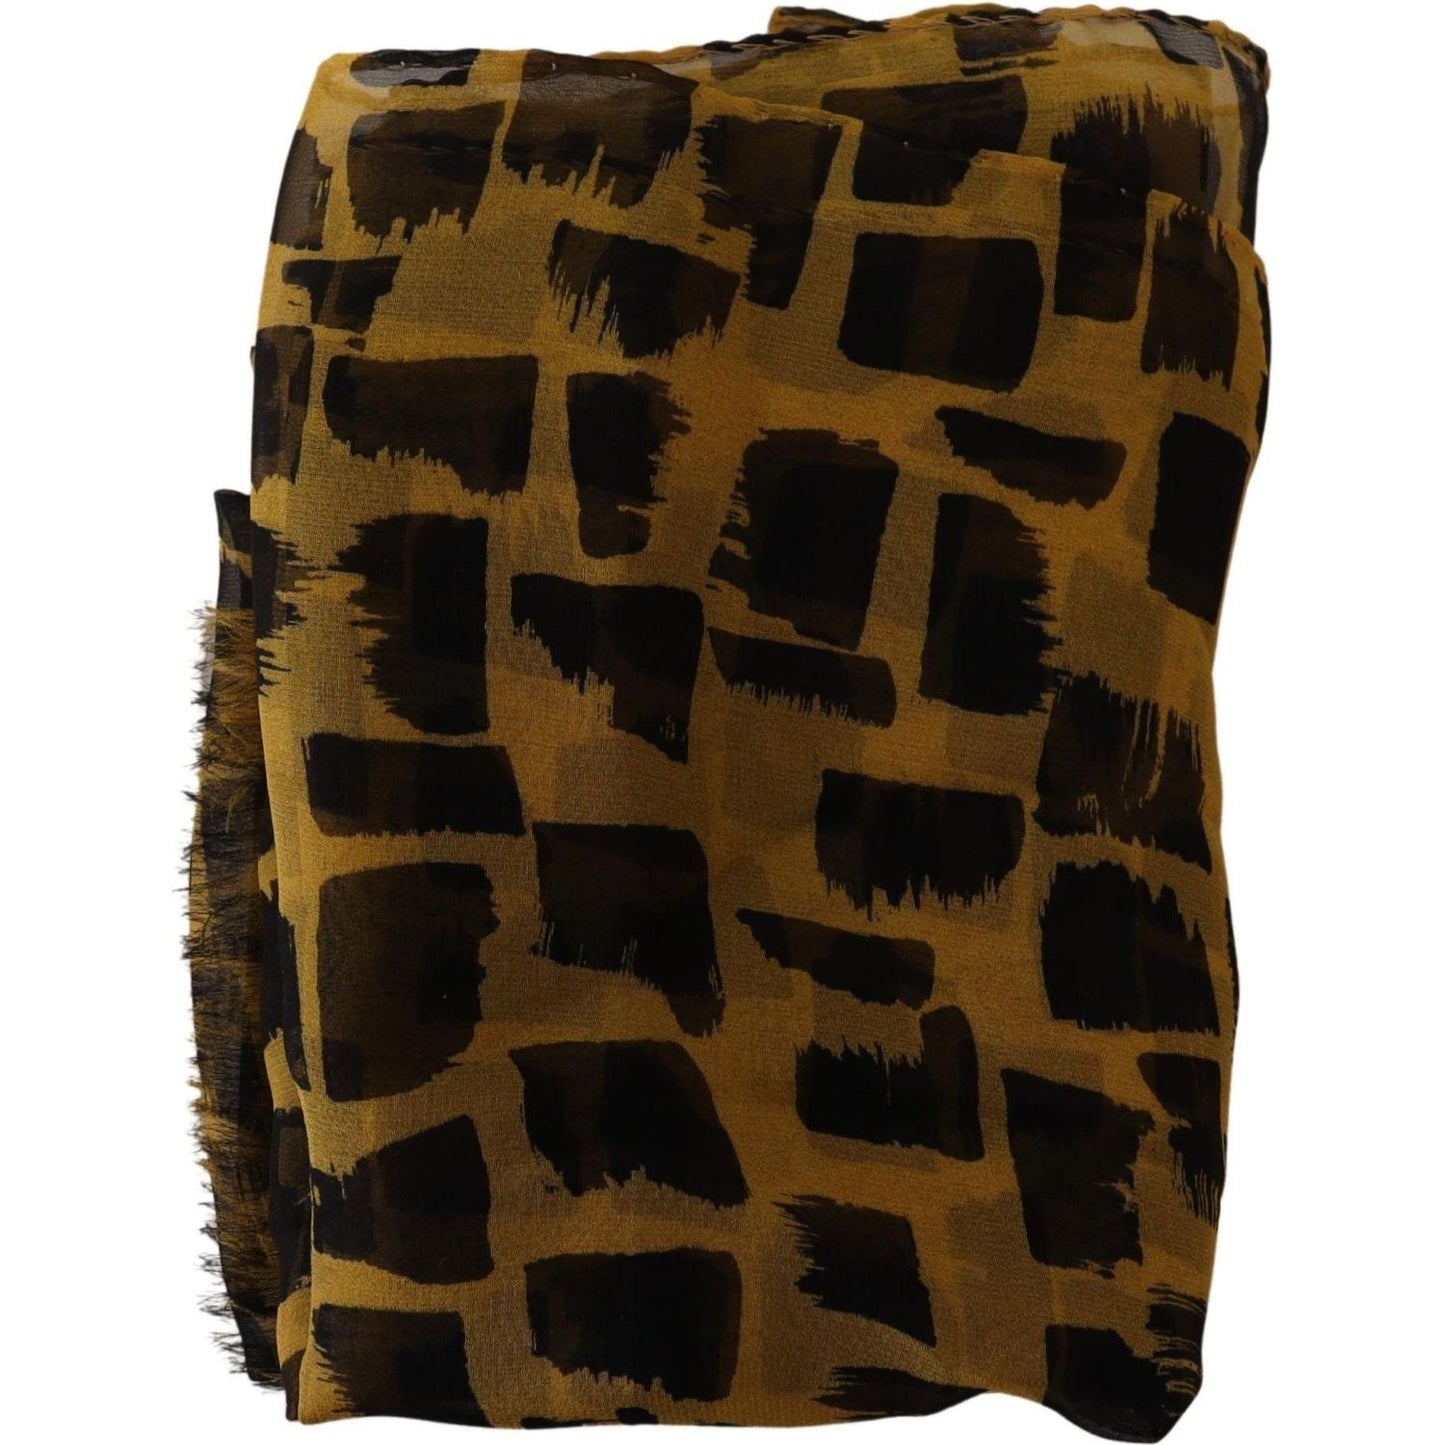 Dolce & Gabbana Elegant Silk Scarf in Yellow & Black yellow-patterned-100-silk-wrap-shawl-scarf IMG_0007-472b6fa5-6c9.jpg